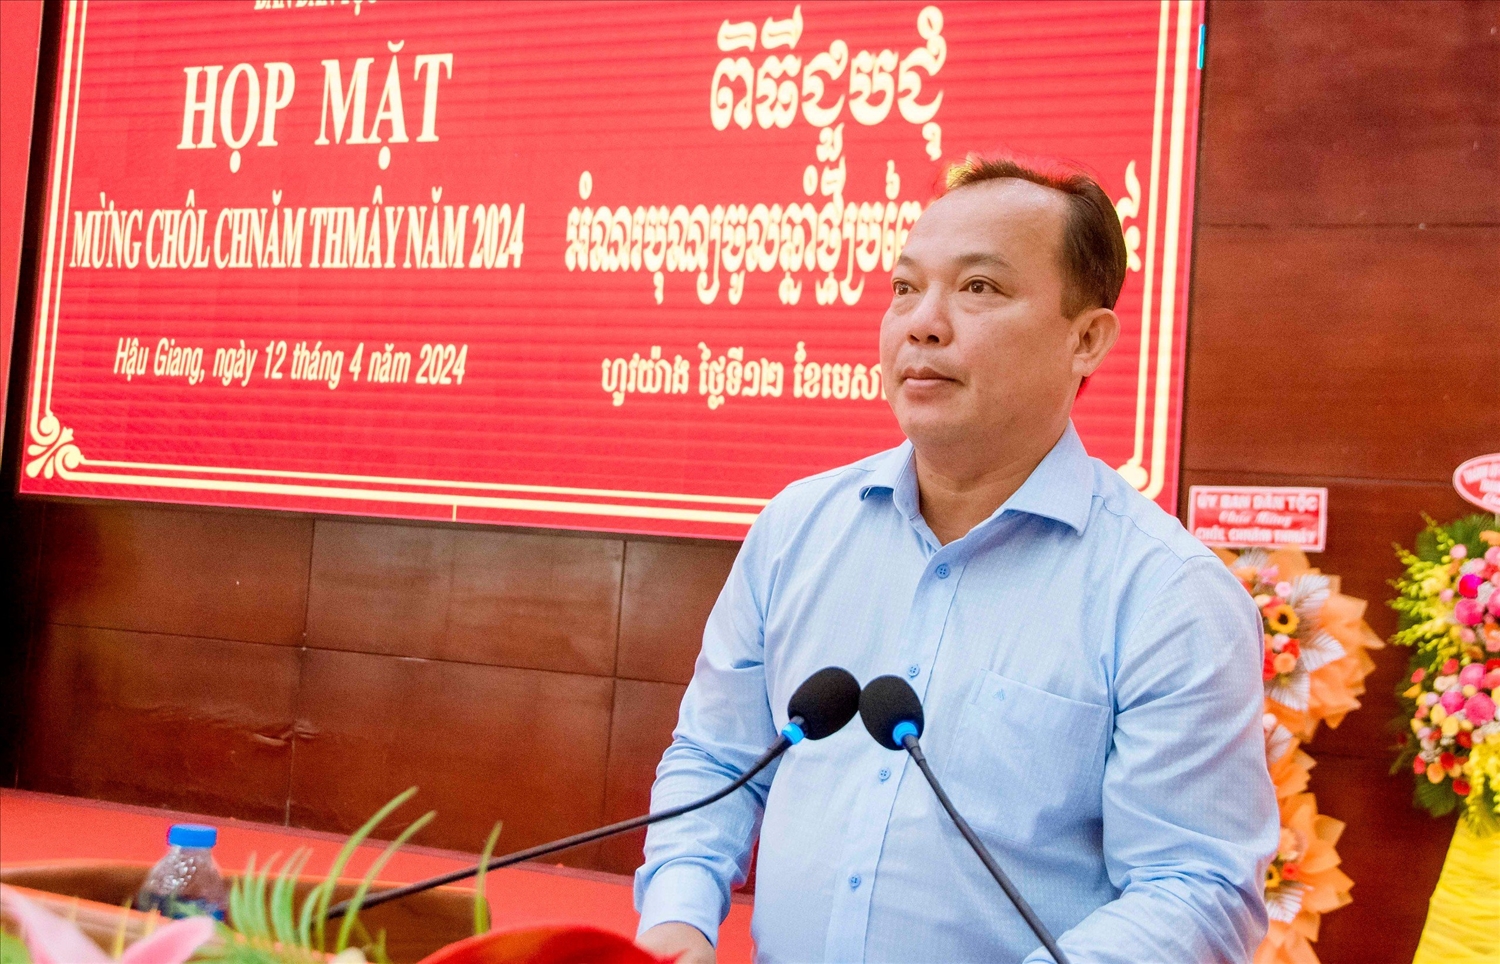 Ông Nguyễn Văn Hoà, Phó Chủ tịch UBND tỉnh Hậu Giang phát biểu tại buổi họp mặt 